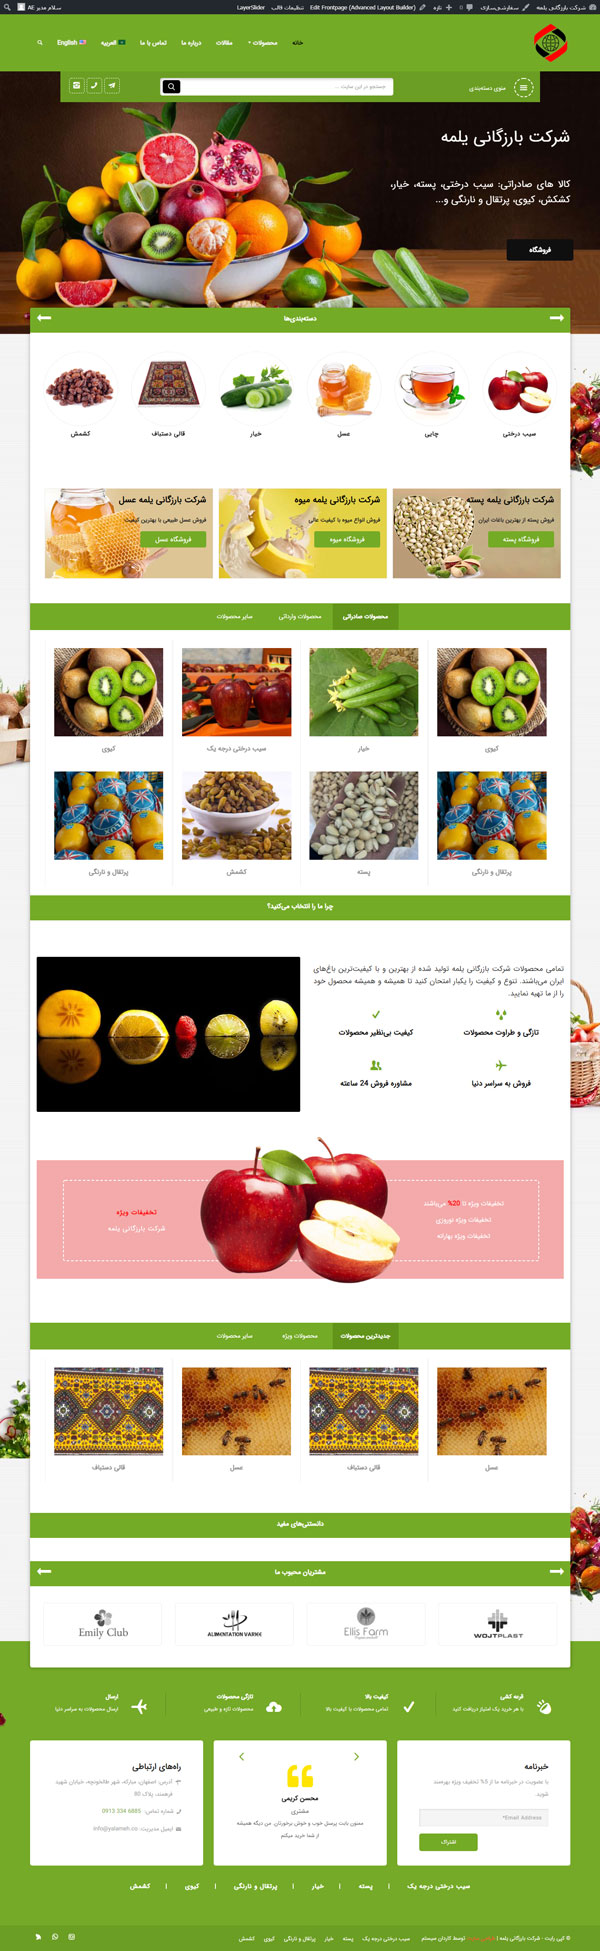 طراحی سایت شرکت بارزگانی یلمه | صادرات میوه، خشکبار و صنایع دستی